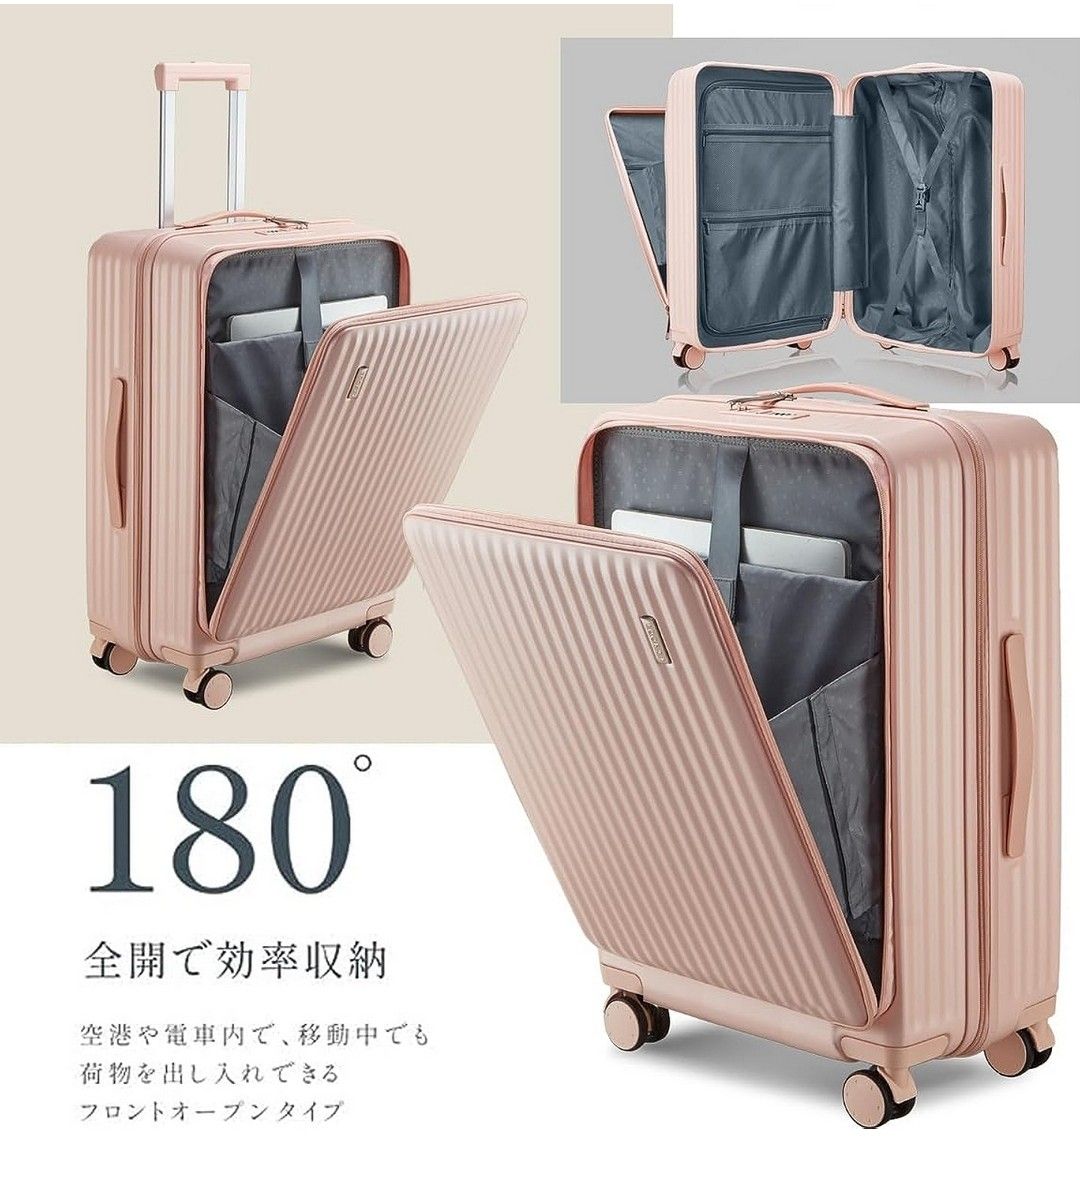 スーツケース キャリーケース フロントオープン キャリーバッグ 機内持込Mサイズ